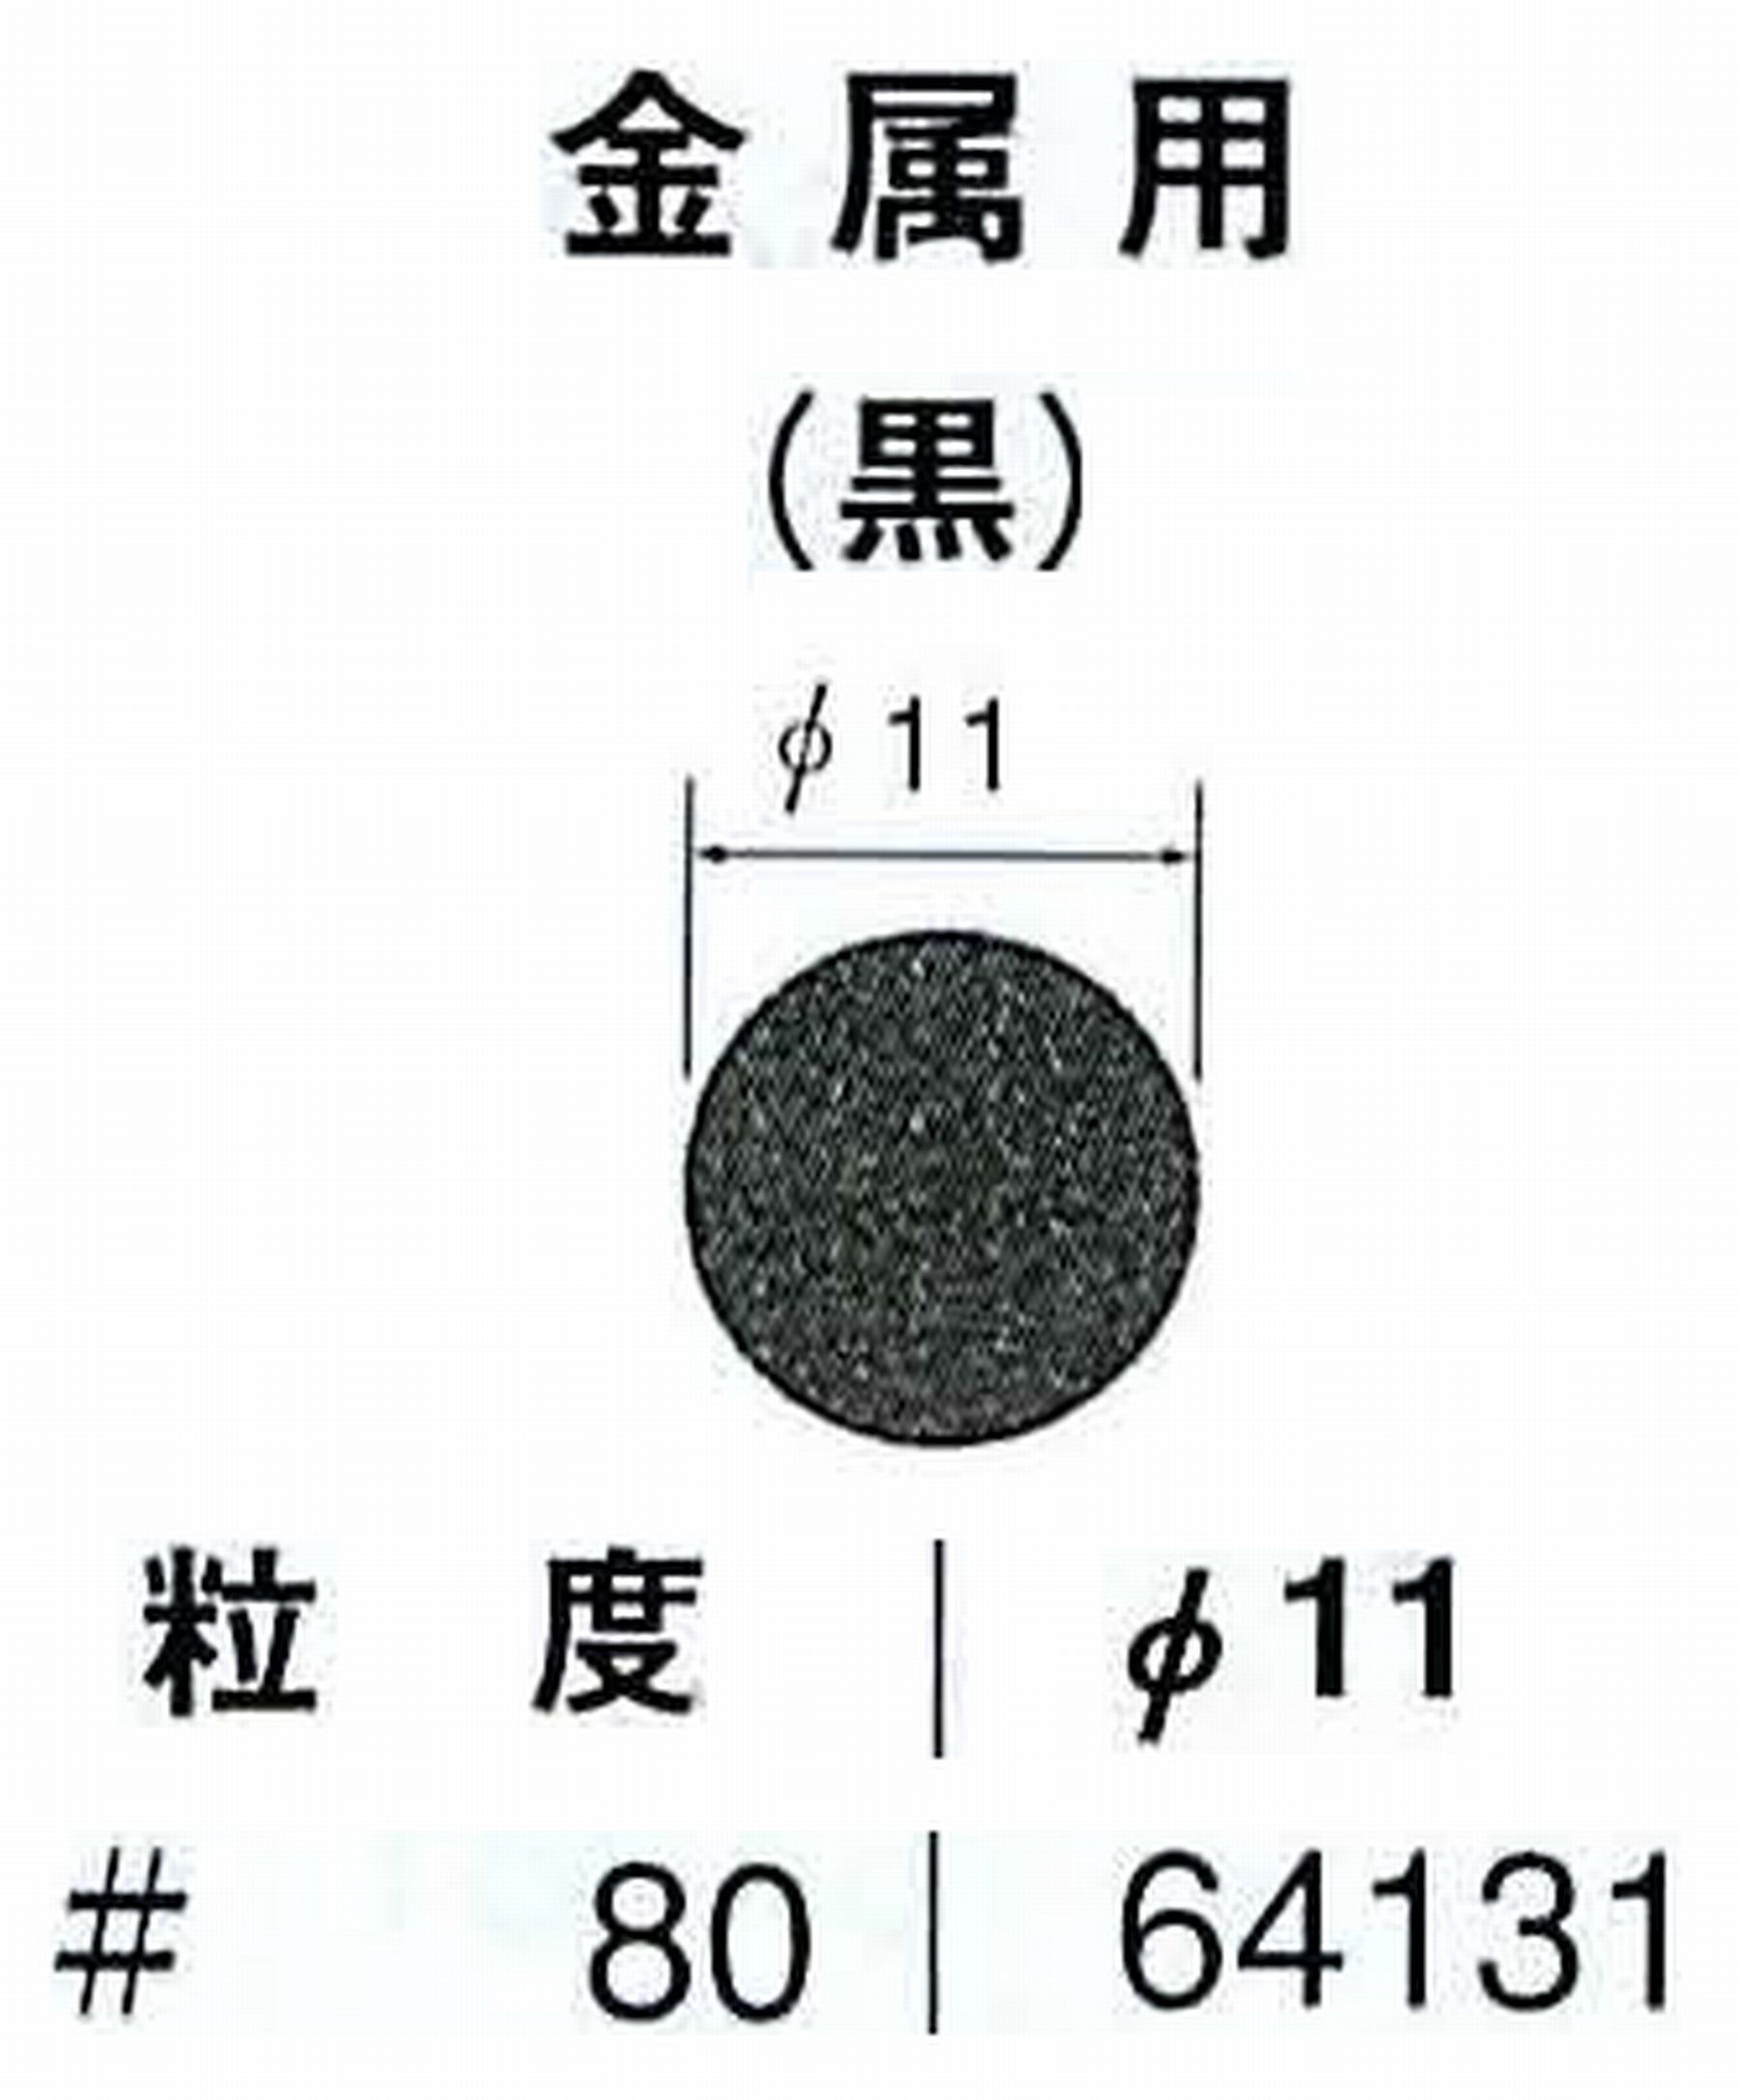 ナカニシ/NAKANISHI アングルグラインダ(電動・エアー) アングルアタッチメント専用工具 サンドペーパーディスク(紙基材タイプ)裏面のり処理 64131